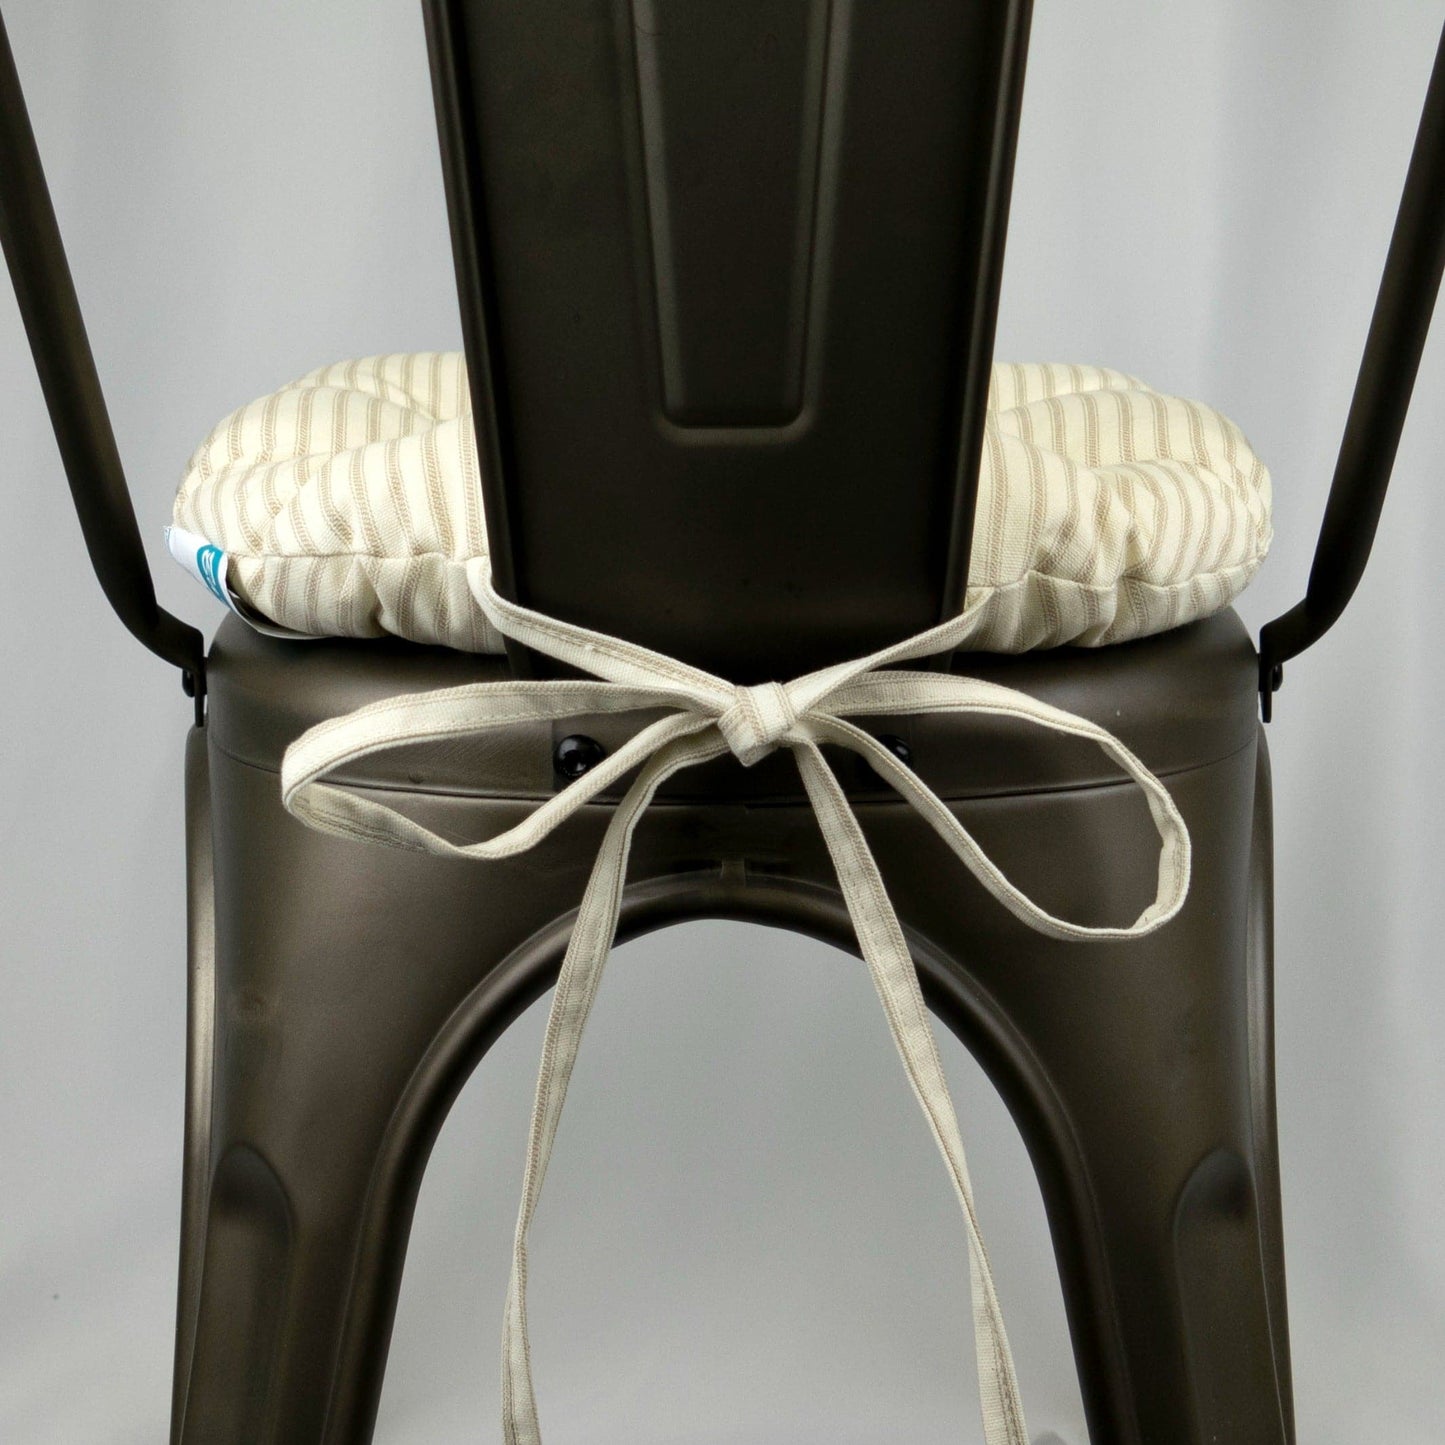 Ticking Stripe Natural Industrial Chair Cushion - Latex Foam Fill - Barnett Home Decor 